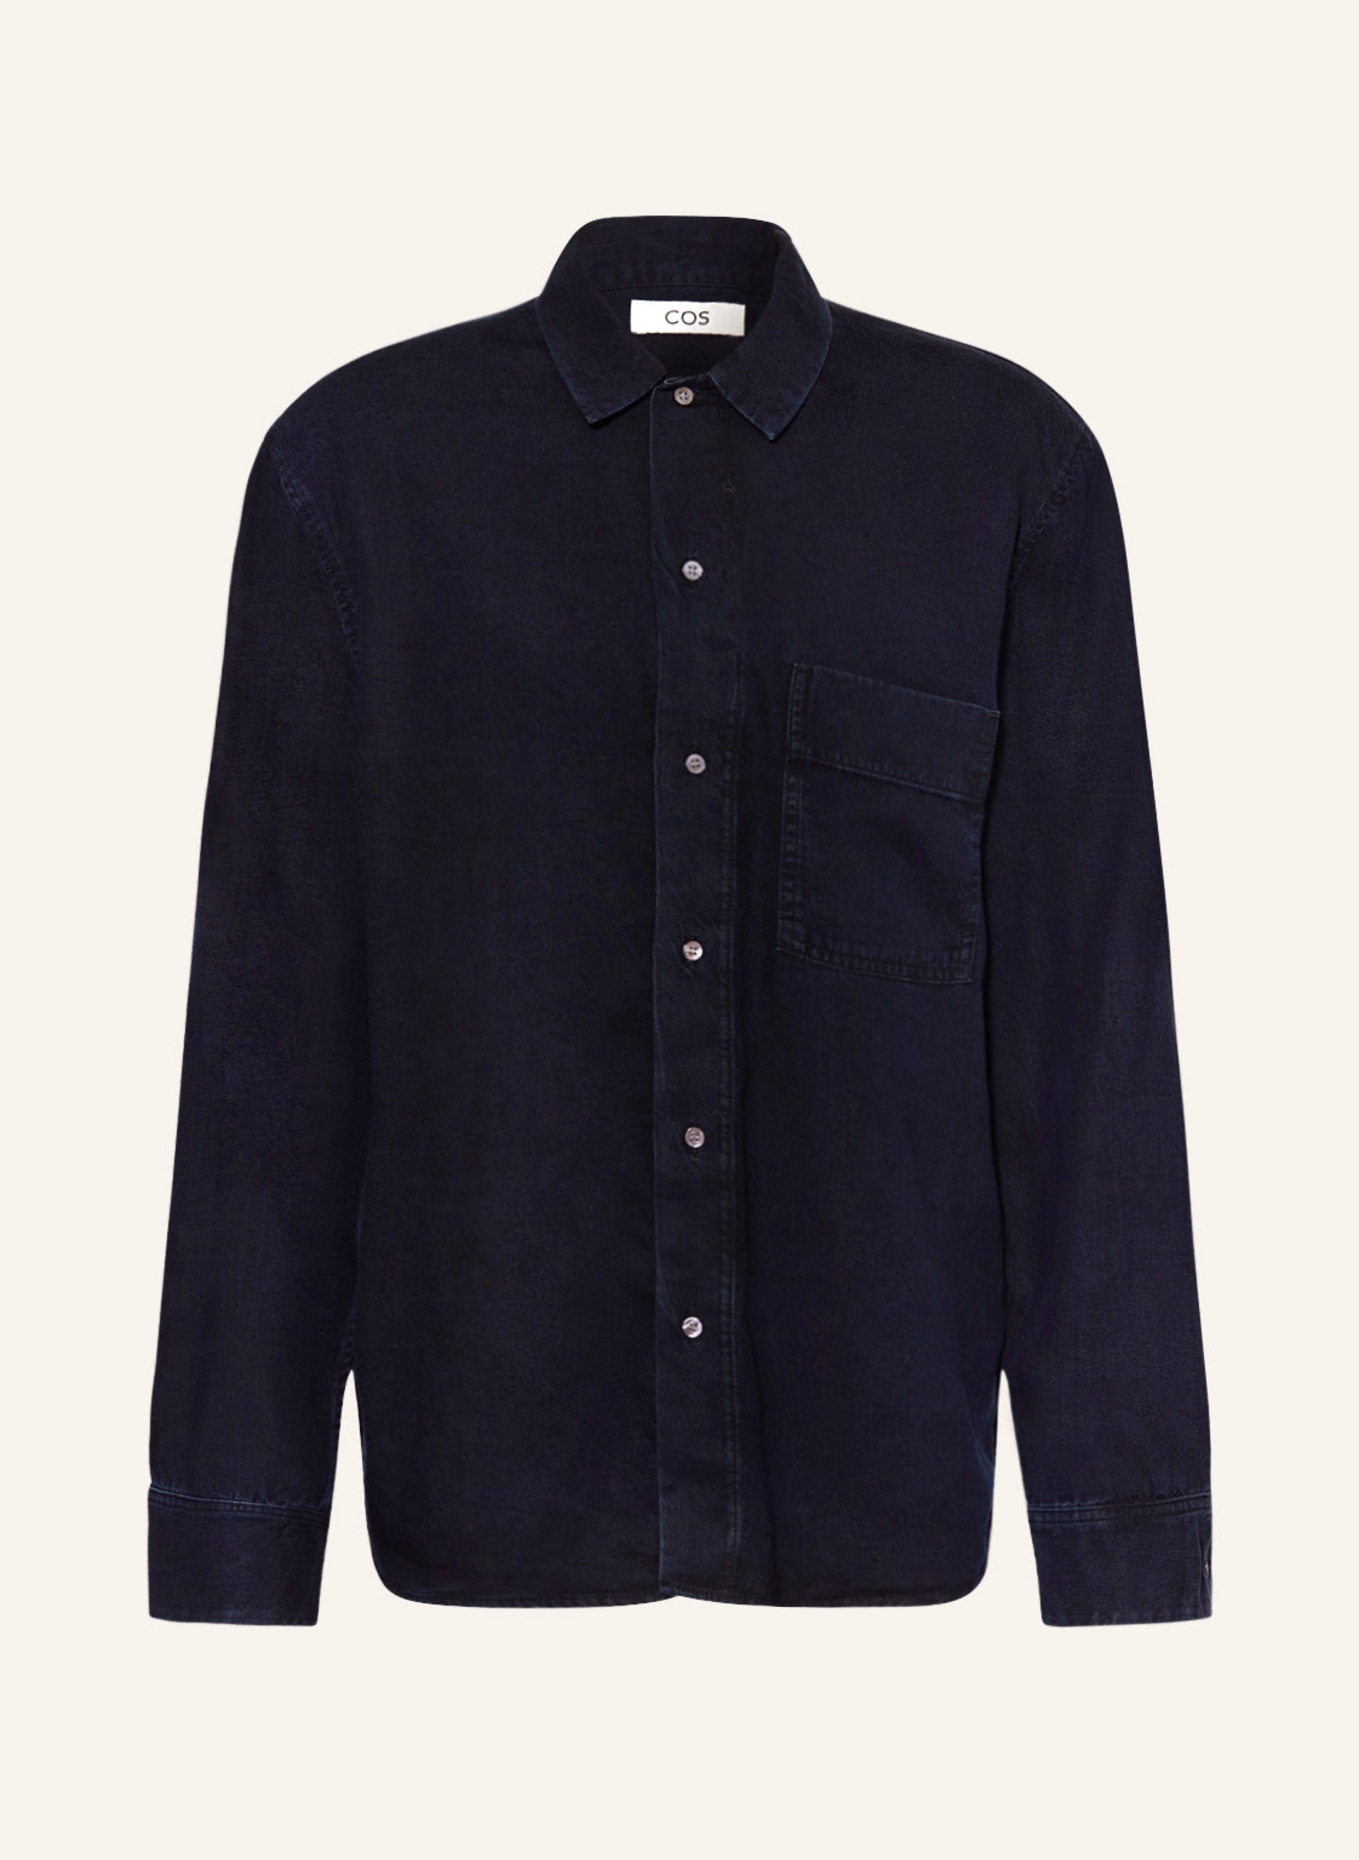 COS Koszula oversized fit w stylu jeansowym, Kolor: 001 Blue Dark (Obrazek 1)